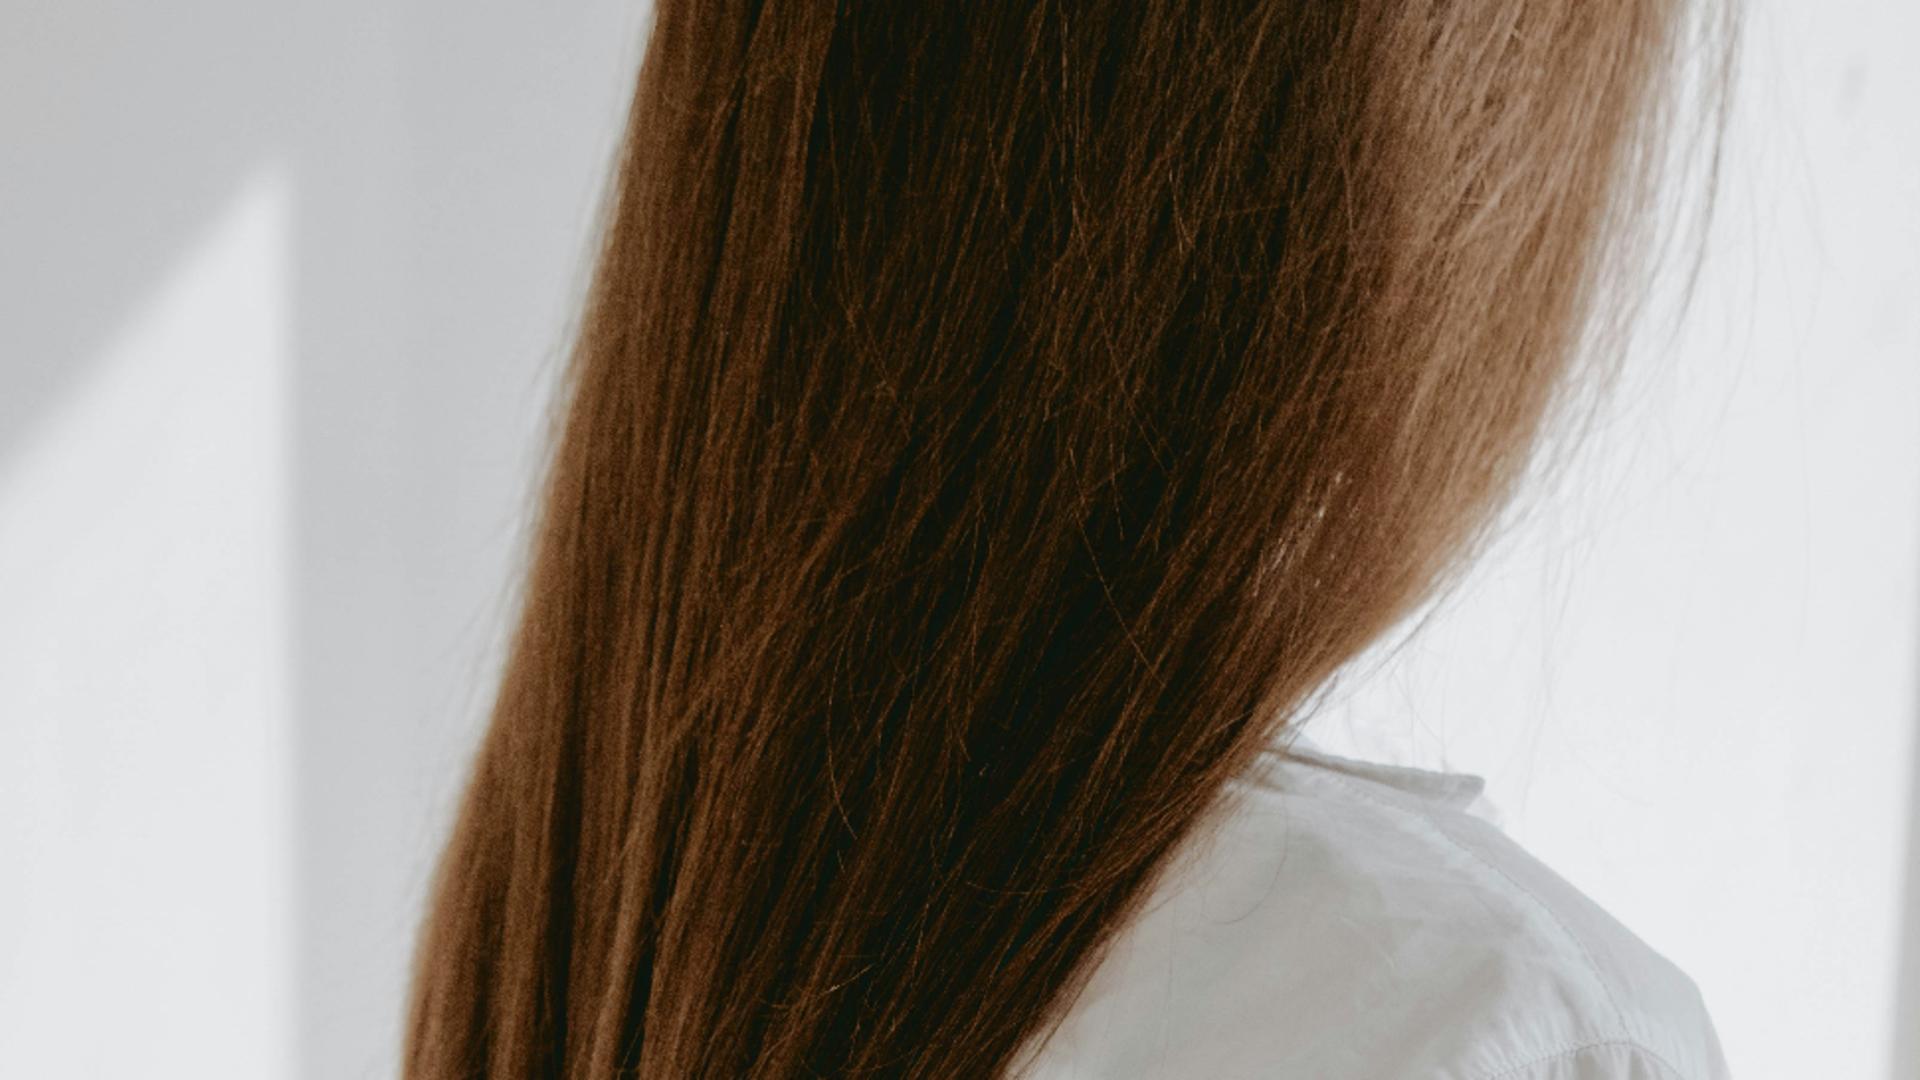 Ia-ți adio de la părul gras! 8 sfaturi care te vor ajuta să scapi de această problemă